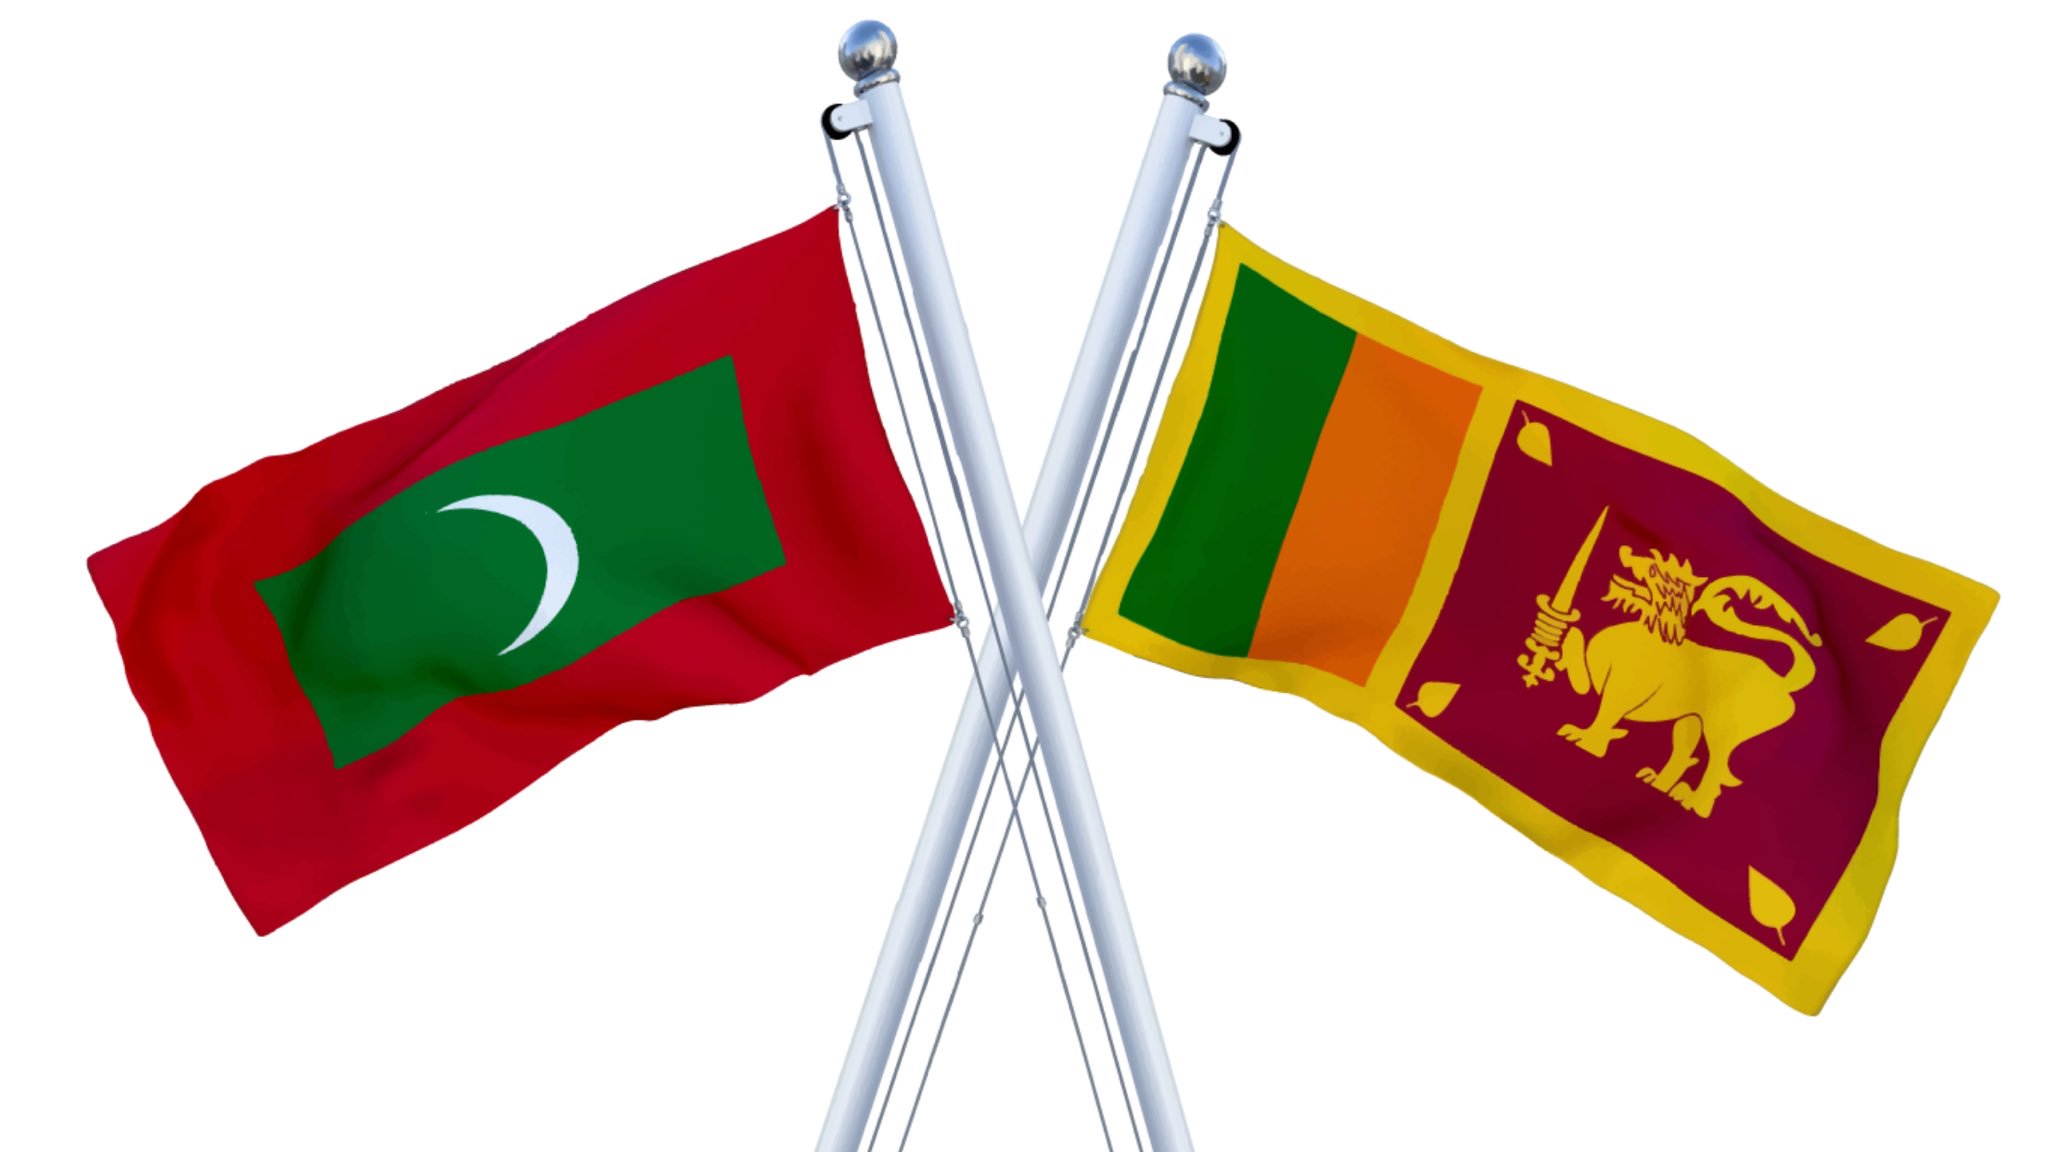 Maldives President arrived in Sri Lanka